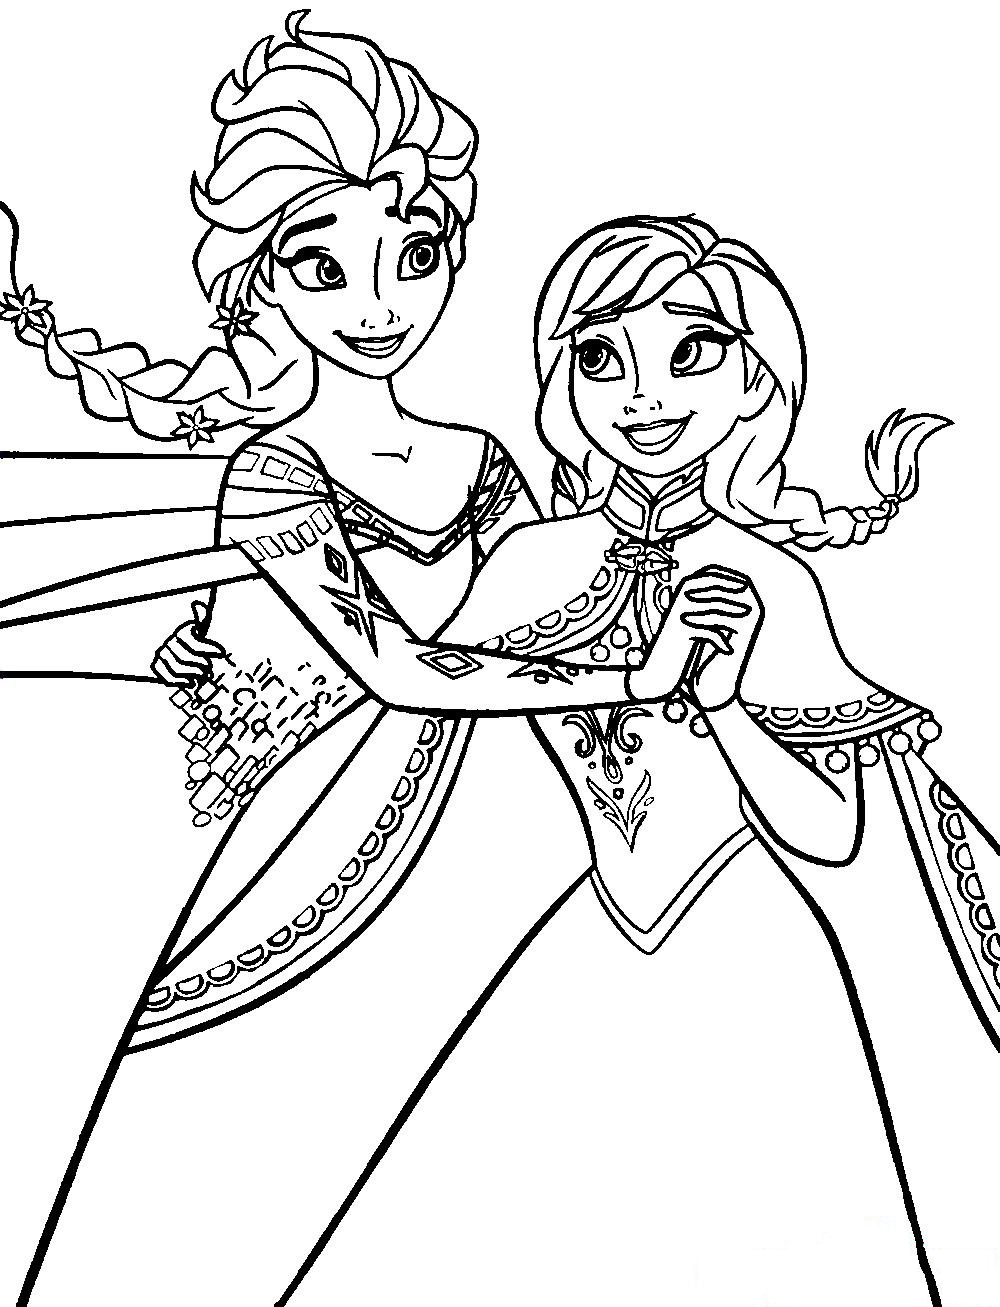 Tranh tô màu công chúa ELsa và Anna khiêu vũ